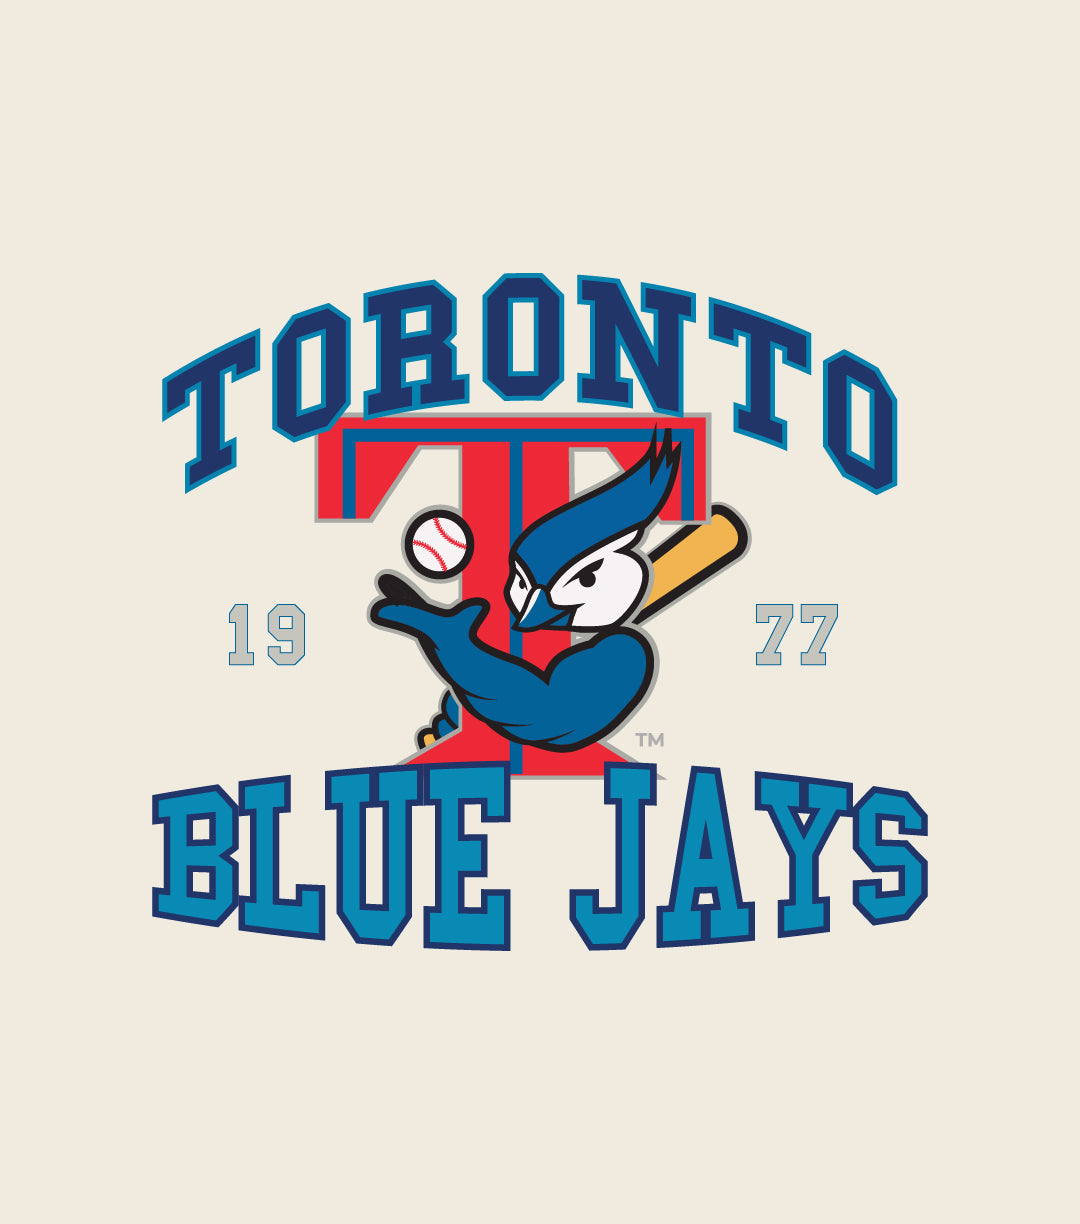 Toronto Blue Jays Vintage Washed T Shirt - Ivory Shirt